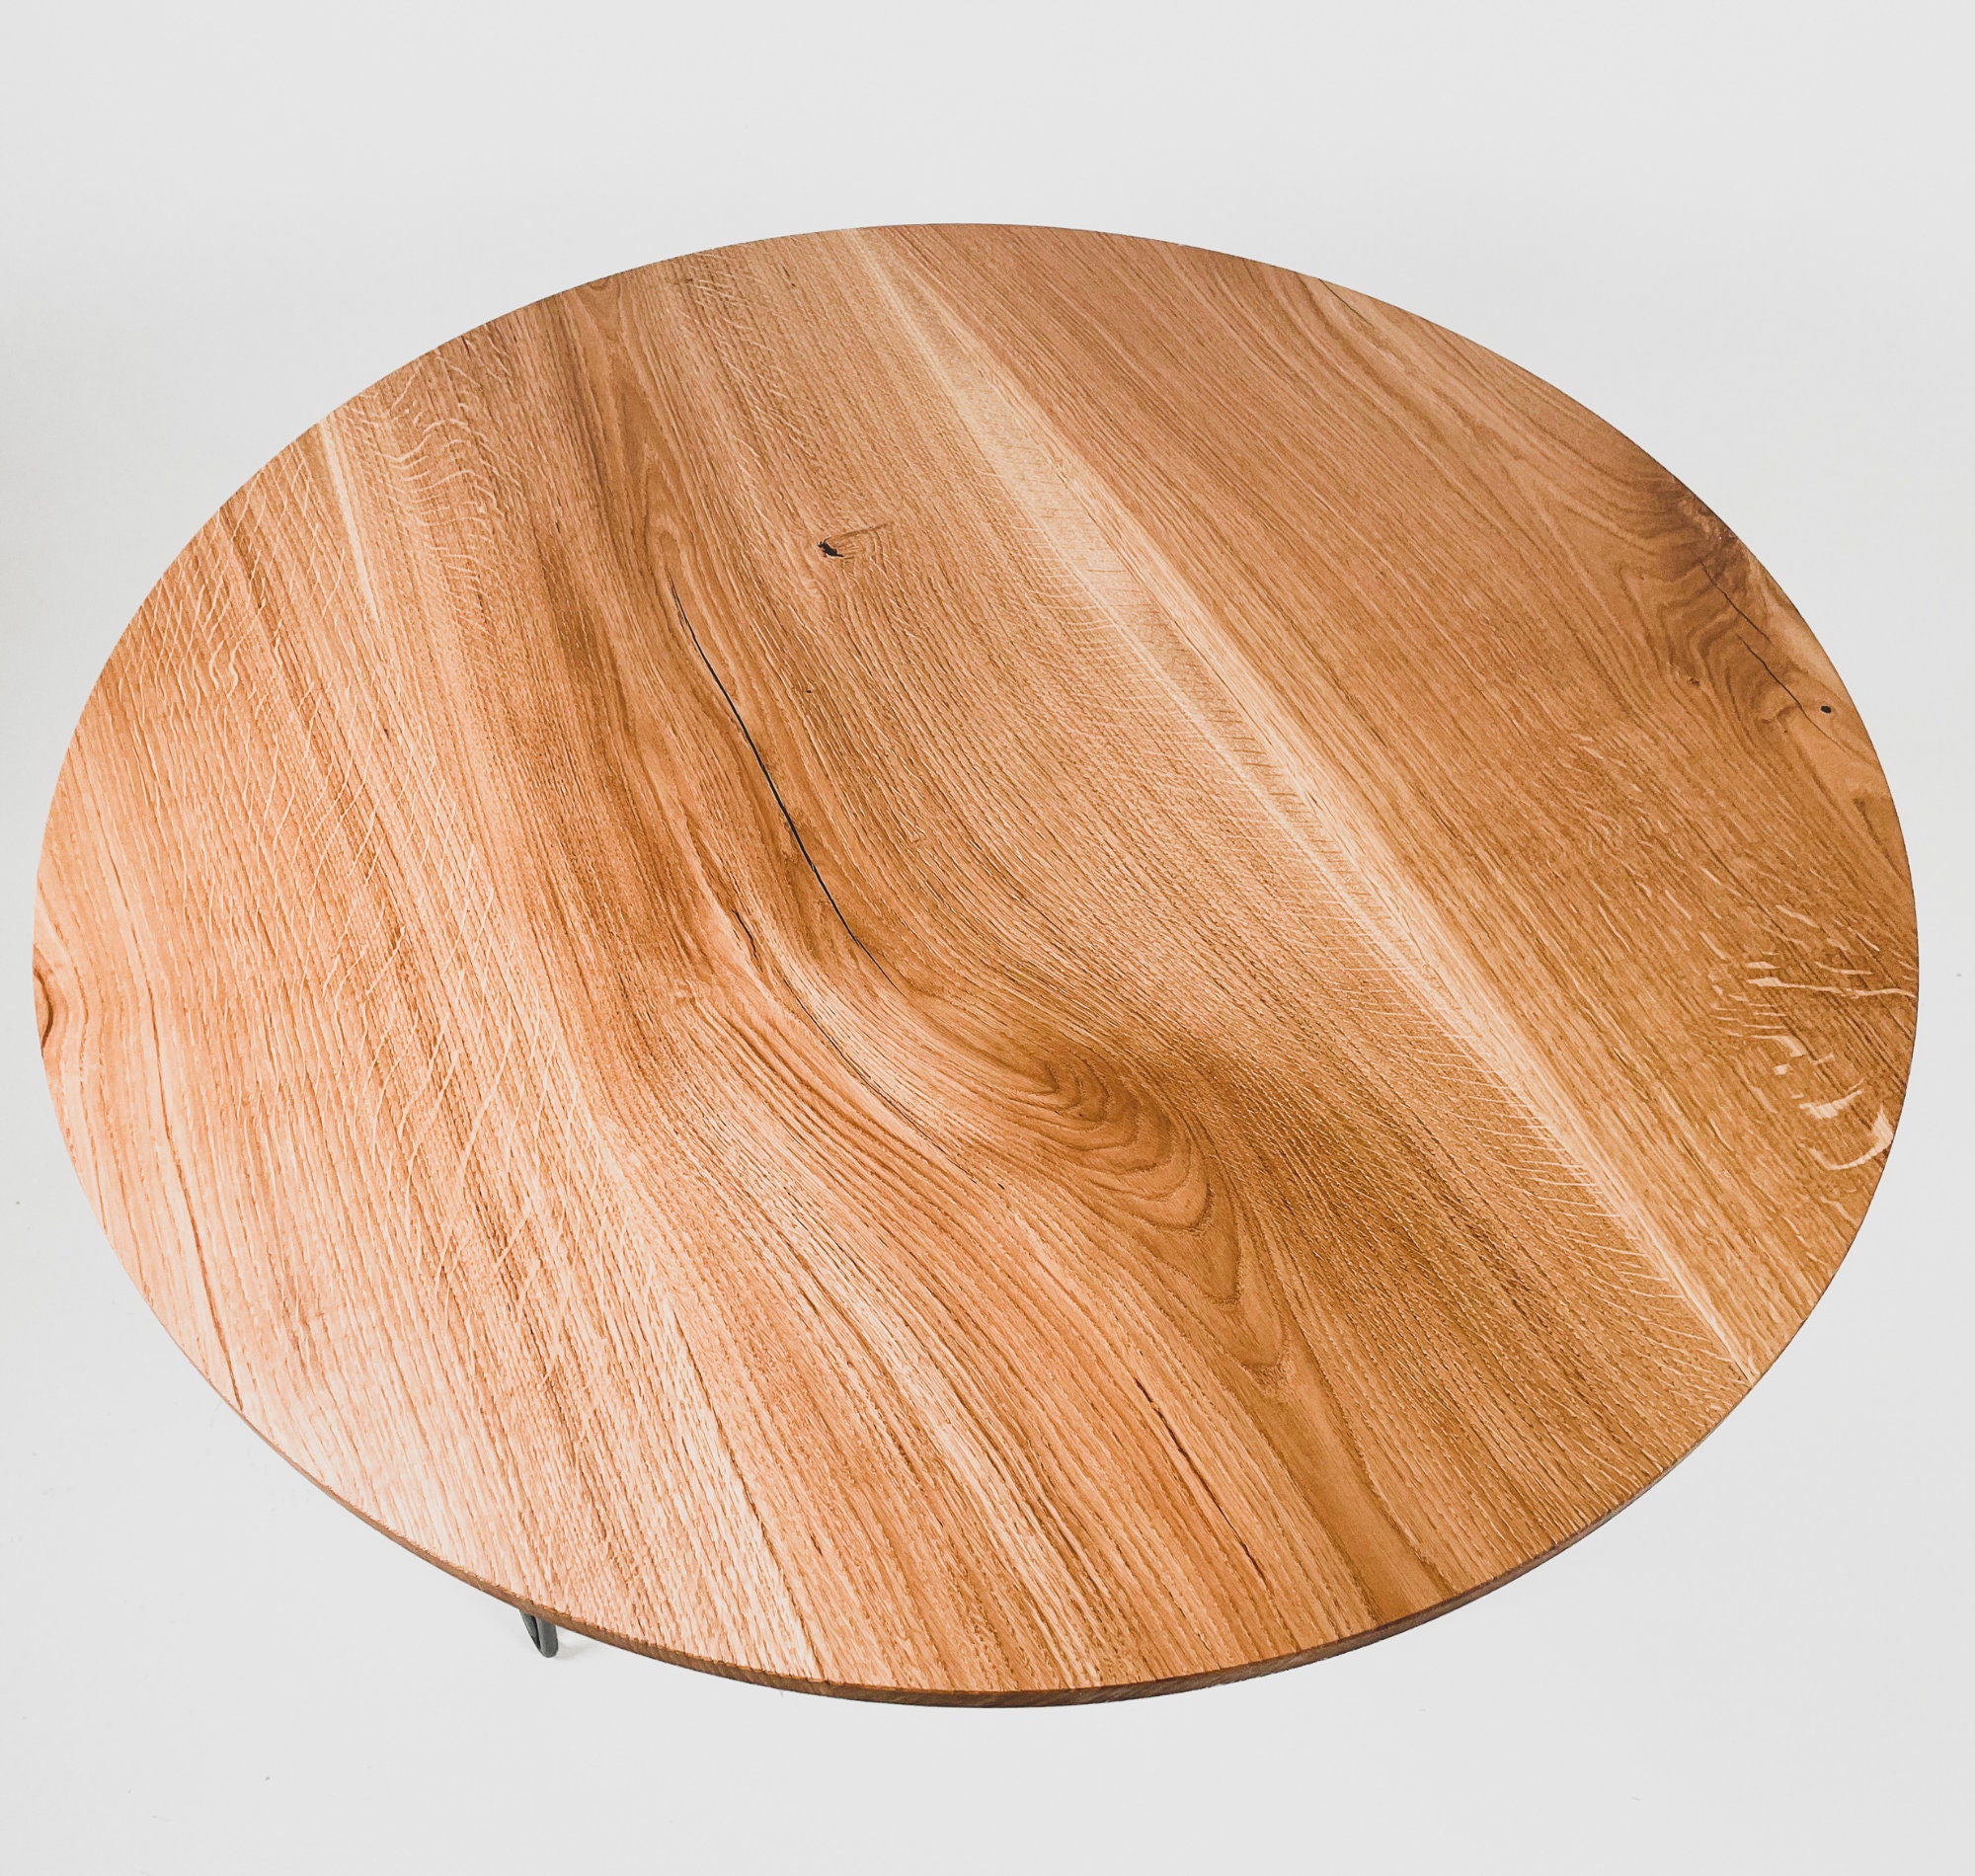 Tablero de mesa de madera de roble redondo / Madera real / Tablero de mesa  redonda / Tablero de cocina / Madera natural / Hecho a mano / Disponible en  10 colores diferentes -  España